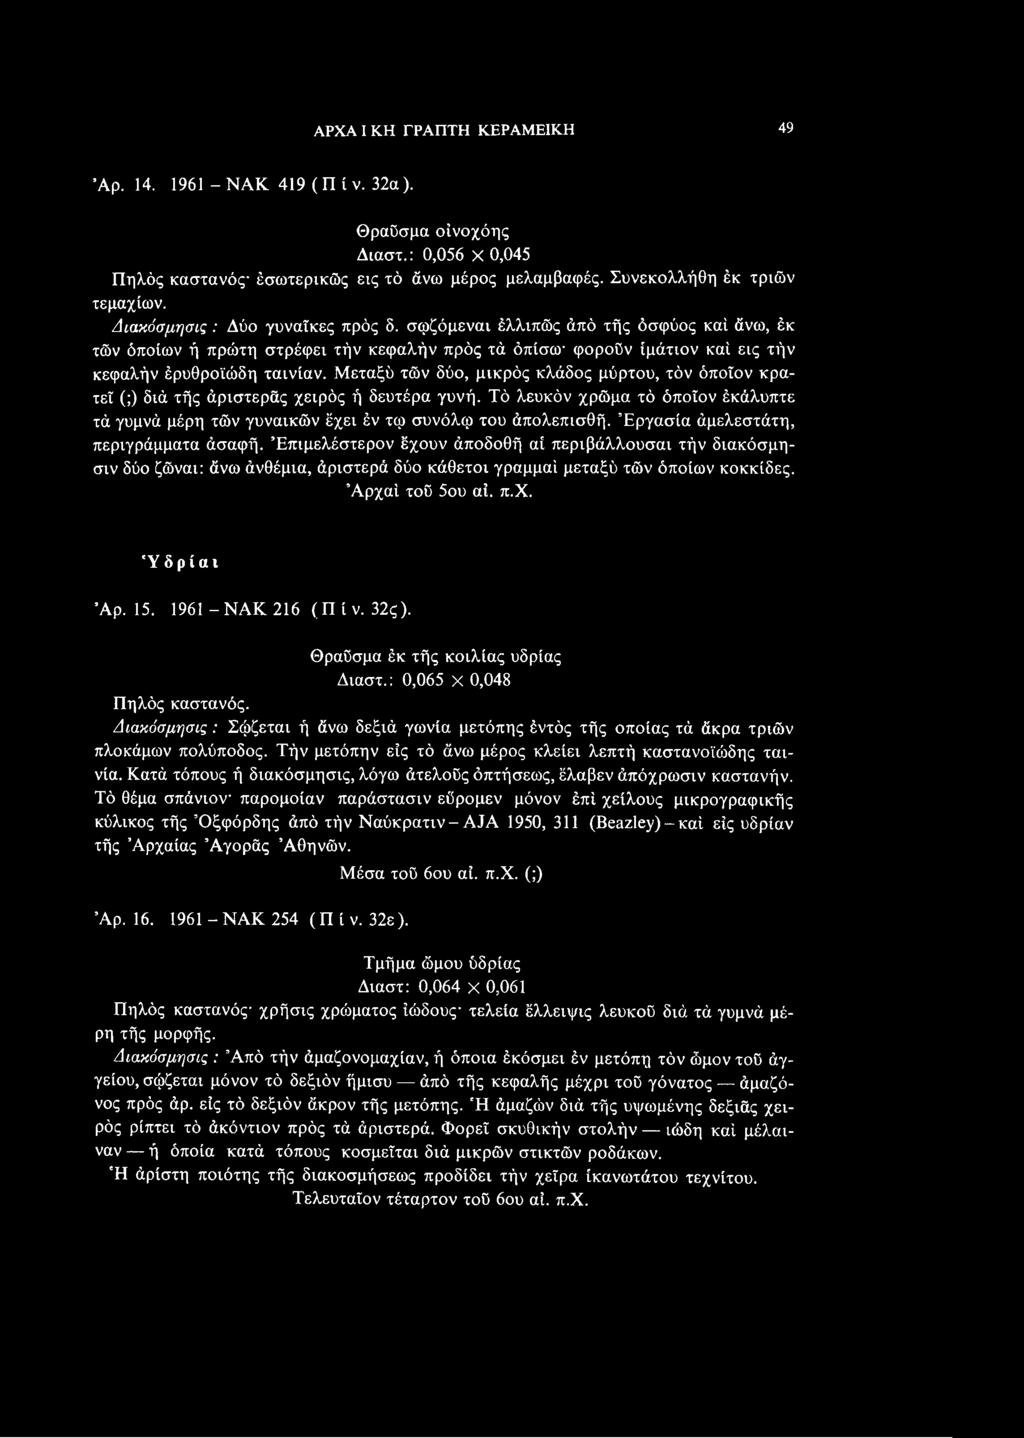 π.χ. 'Υδρίαν Άρ. 15. 1961 -ΝΑΚ 216 (Π ί ν. 32ς). Θραϋσμα έκ τής κοιλίας υδρίας Διαστ.: 0,065 X 0,048 Πηλός καστανός.